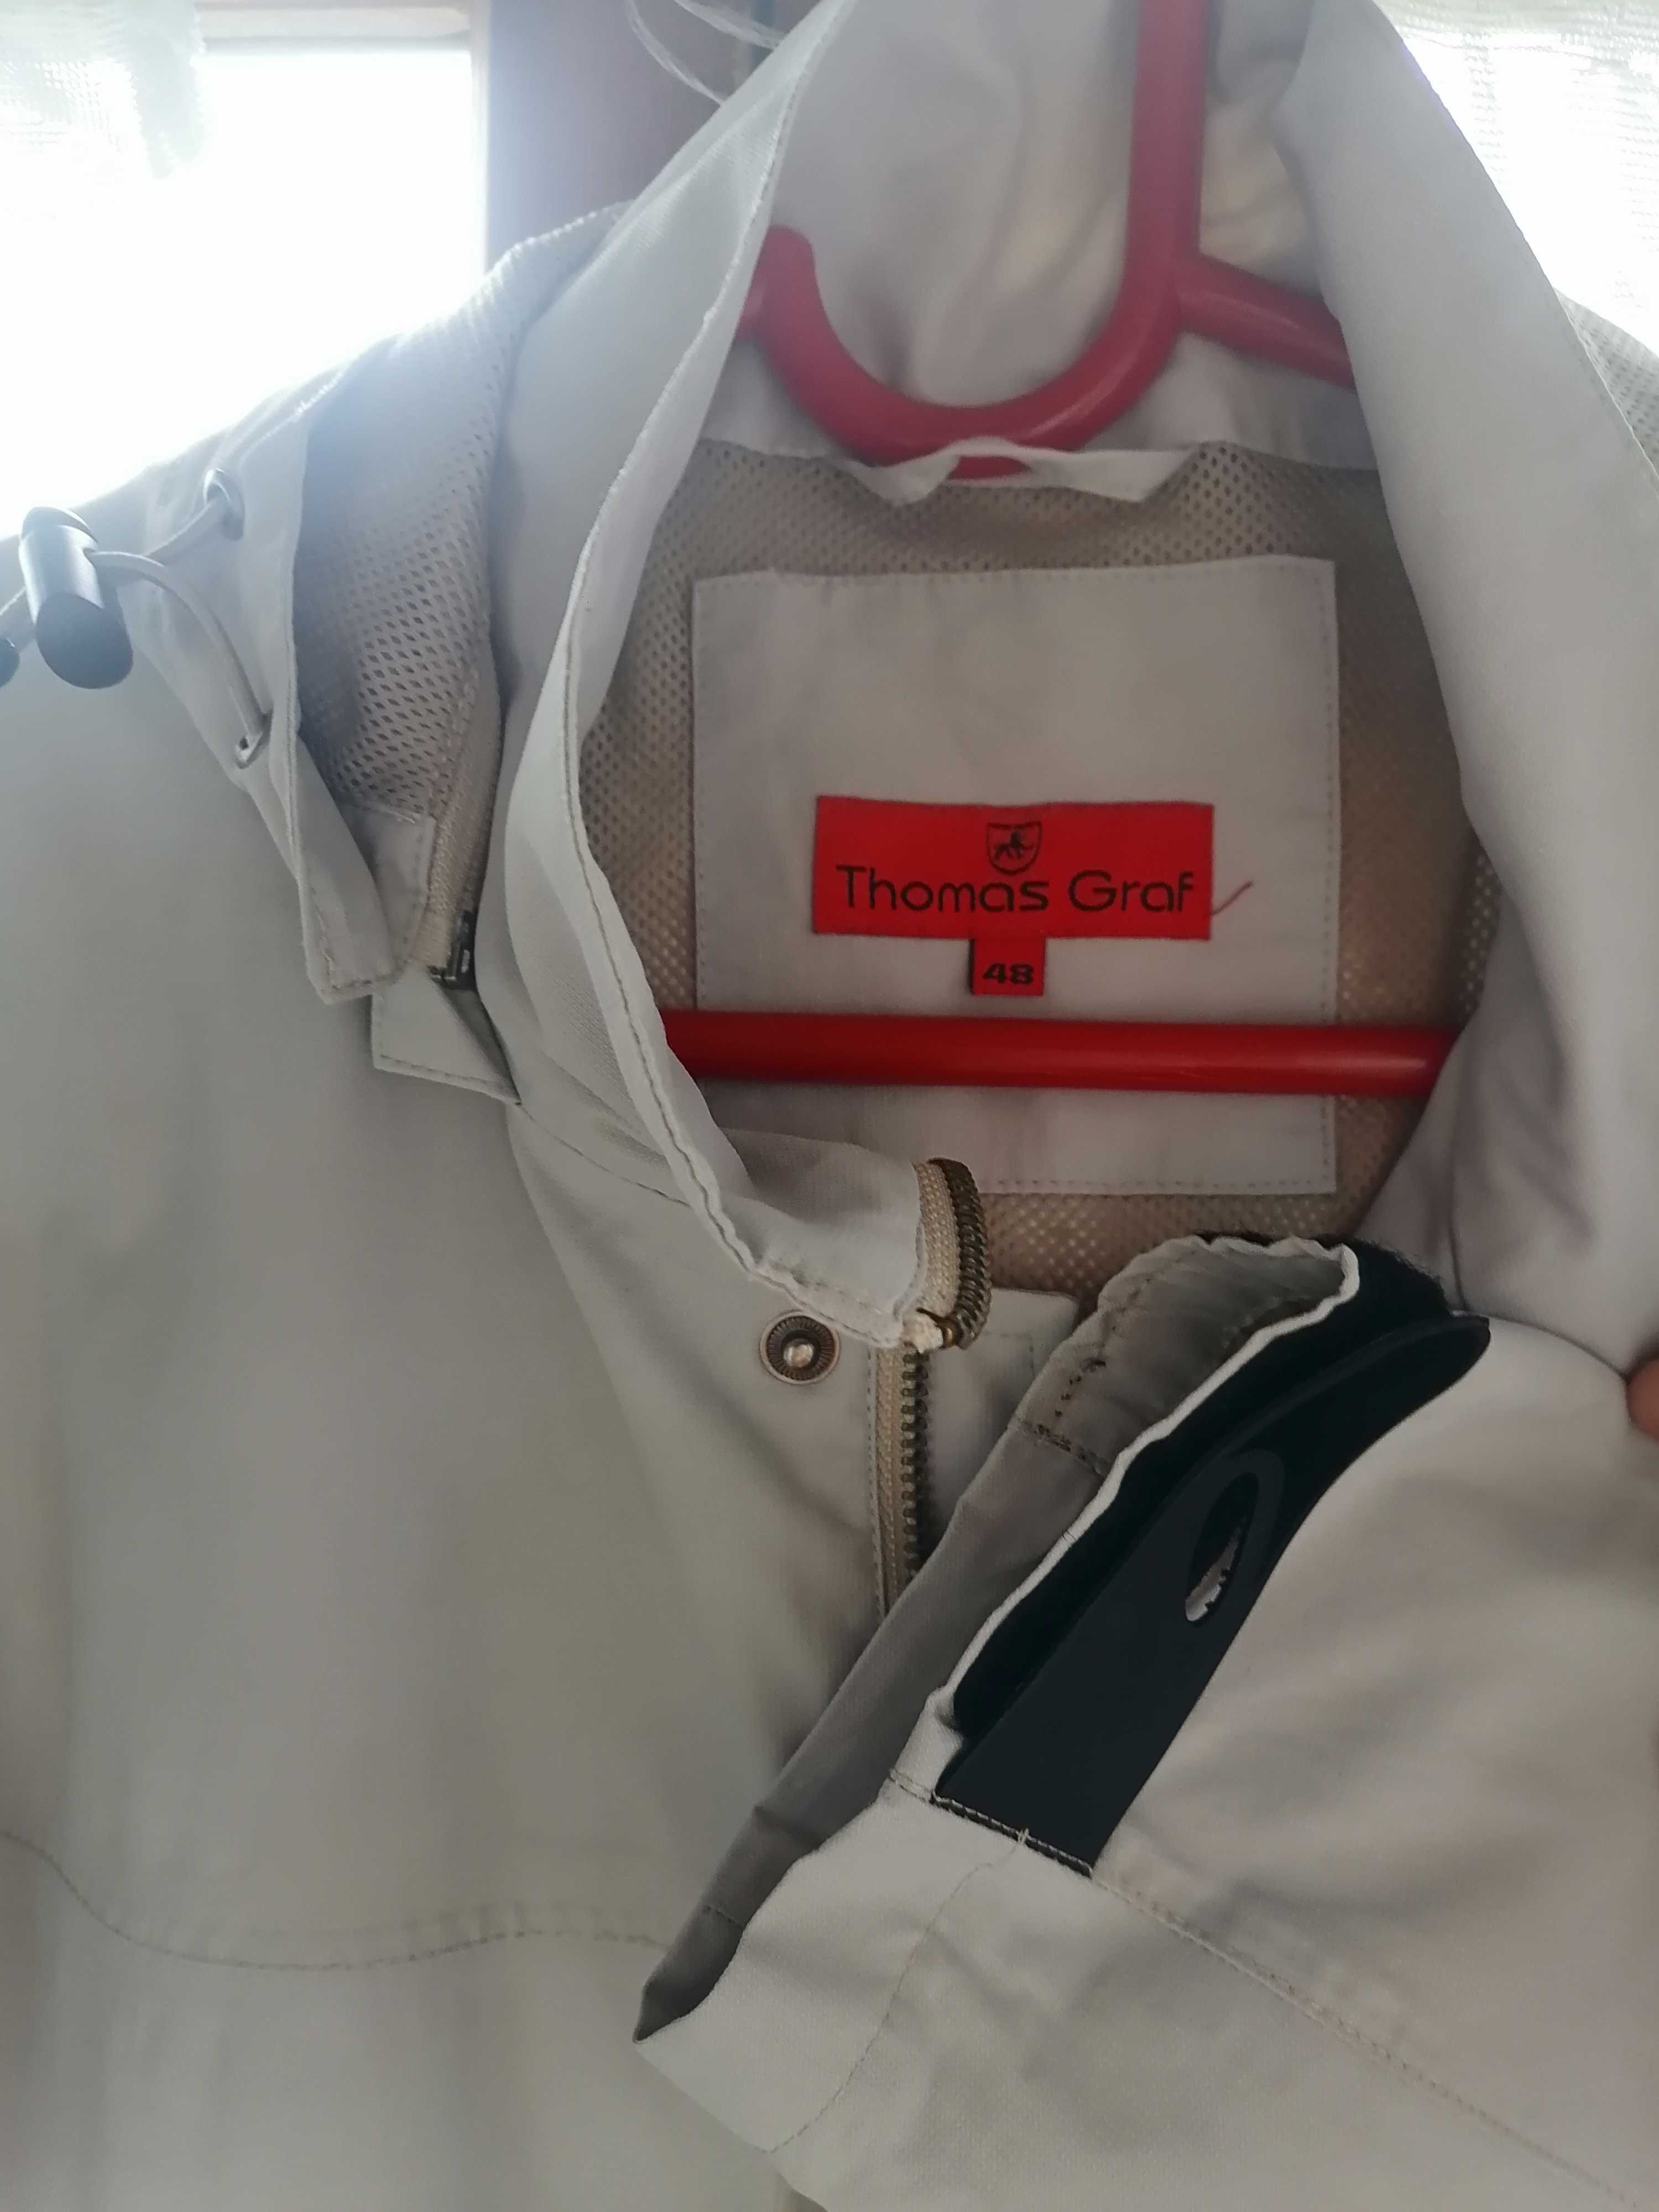 THOMAS GRAF/разм - 48/Куртка с капюшоном демисезонная (осень-весна)